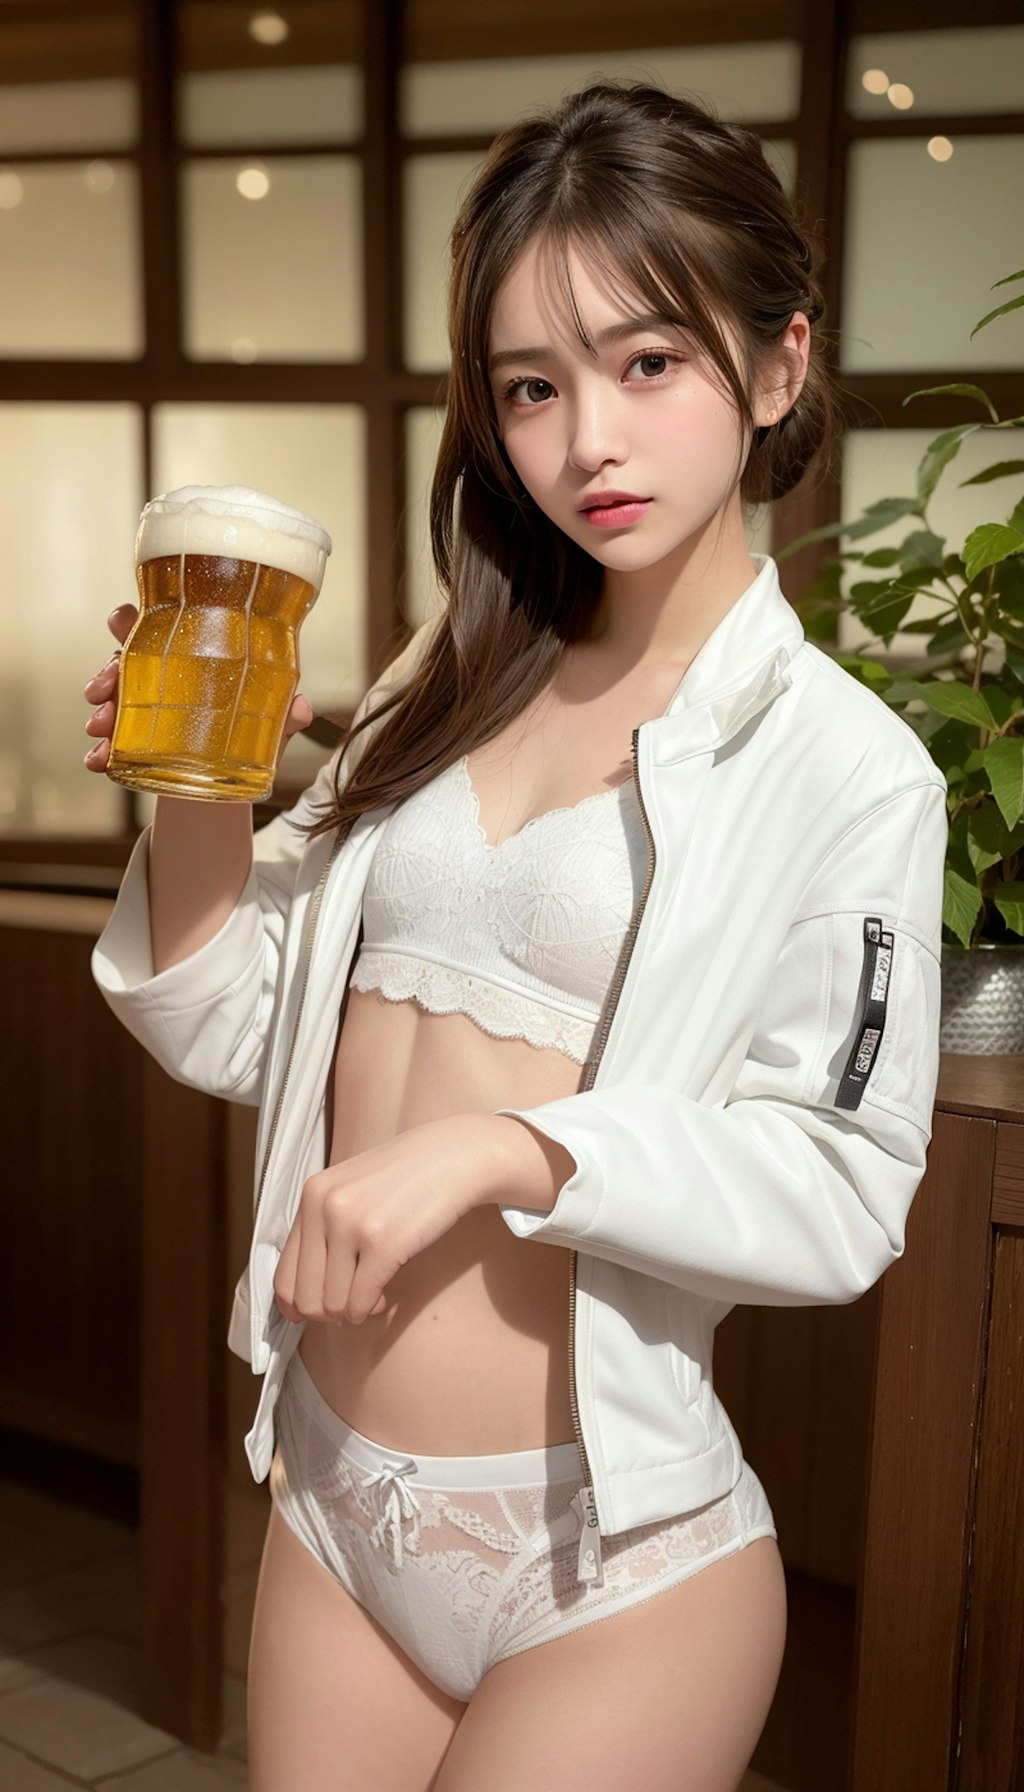 ビール62